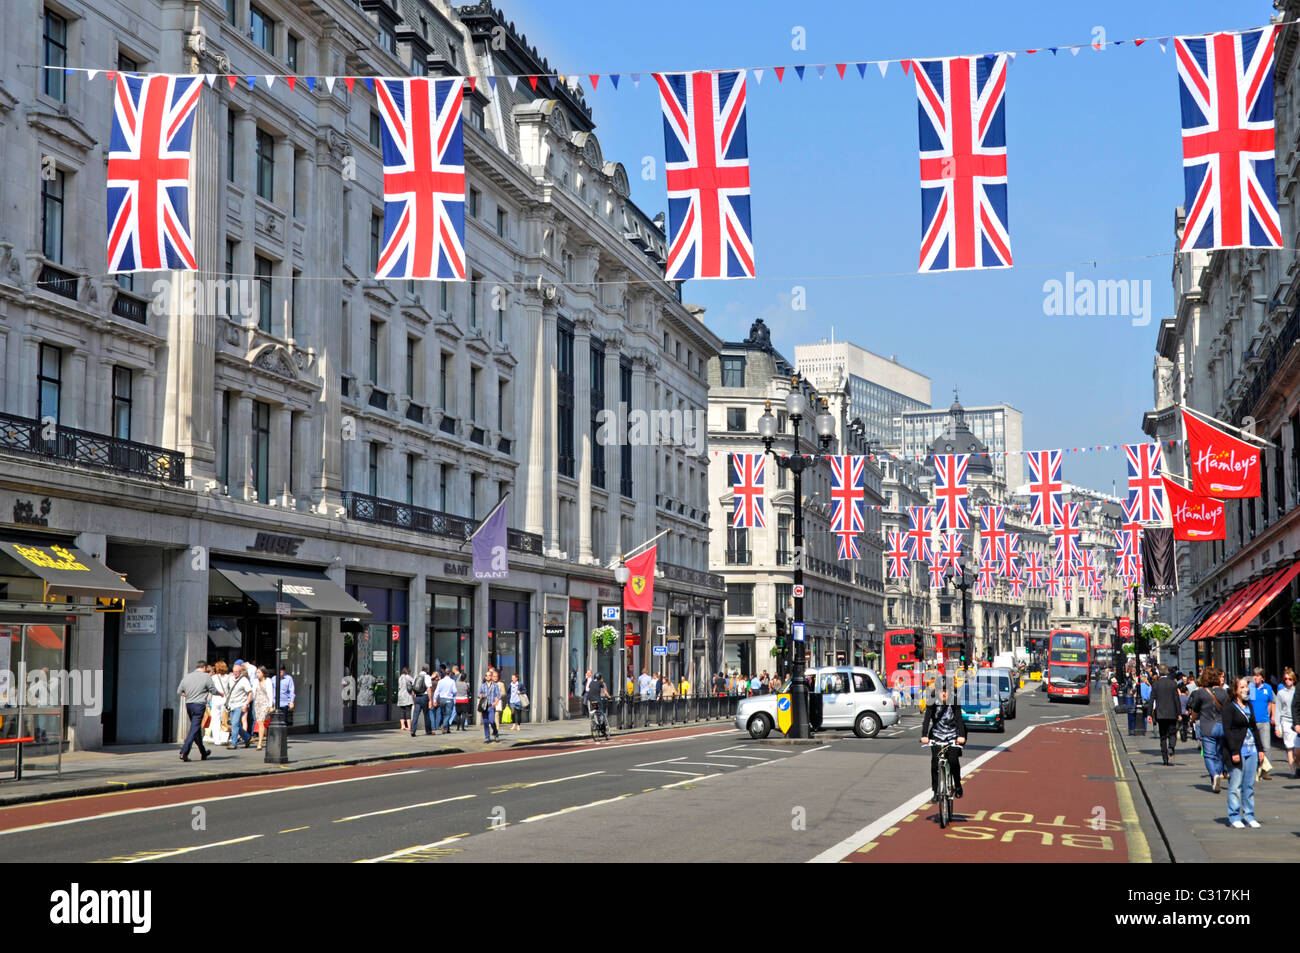 Regent Street paysage urbain coloré Union Jack drapeaux pour les célébrations du mariage royal dans une route de shopping touristique dans le West End de Londres Angleterre Royaume-Uni Banque D'Images